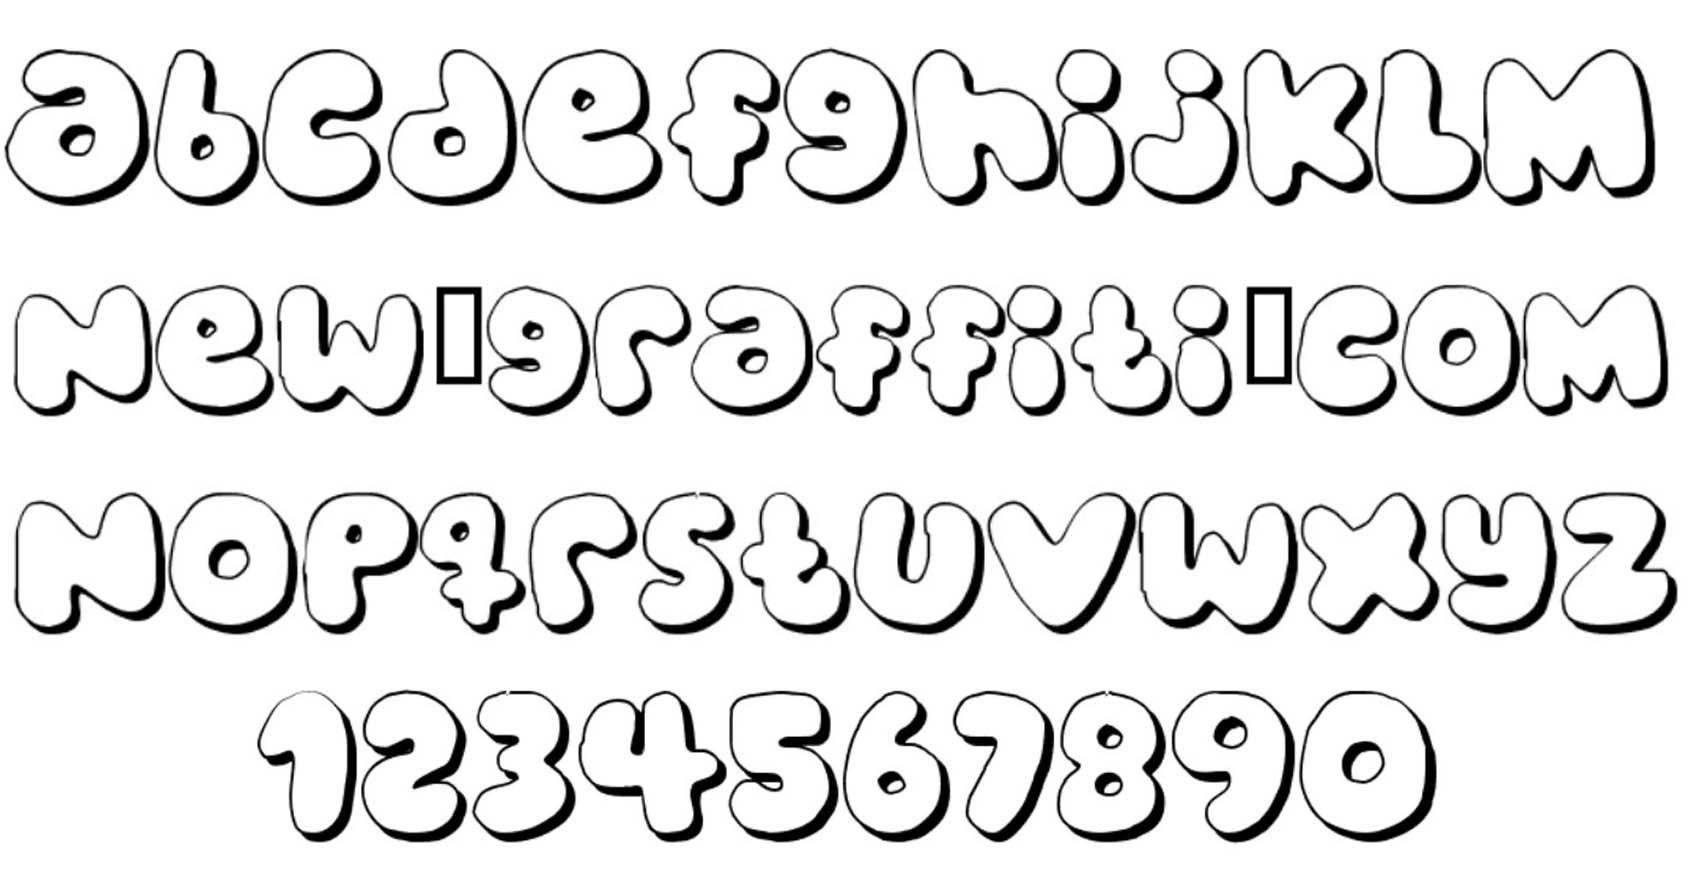 Best s of Bubble Letter Font Bubble Letter Font